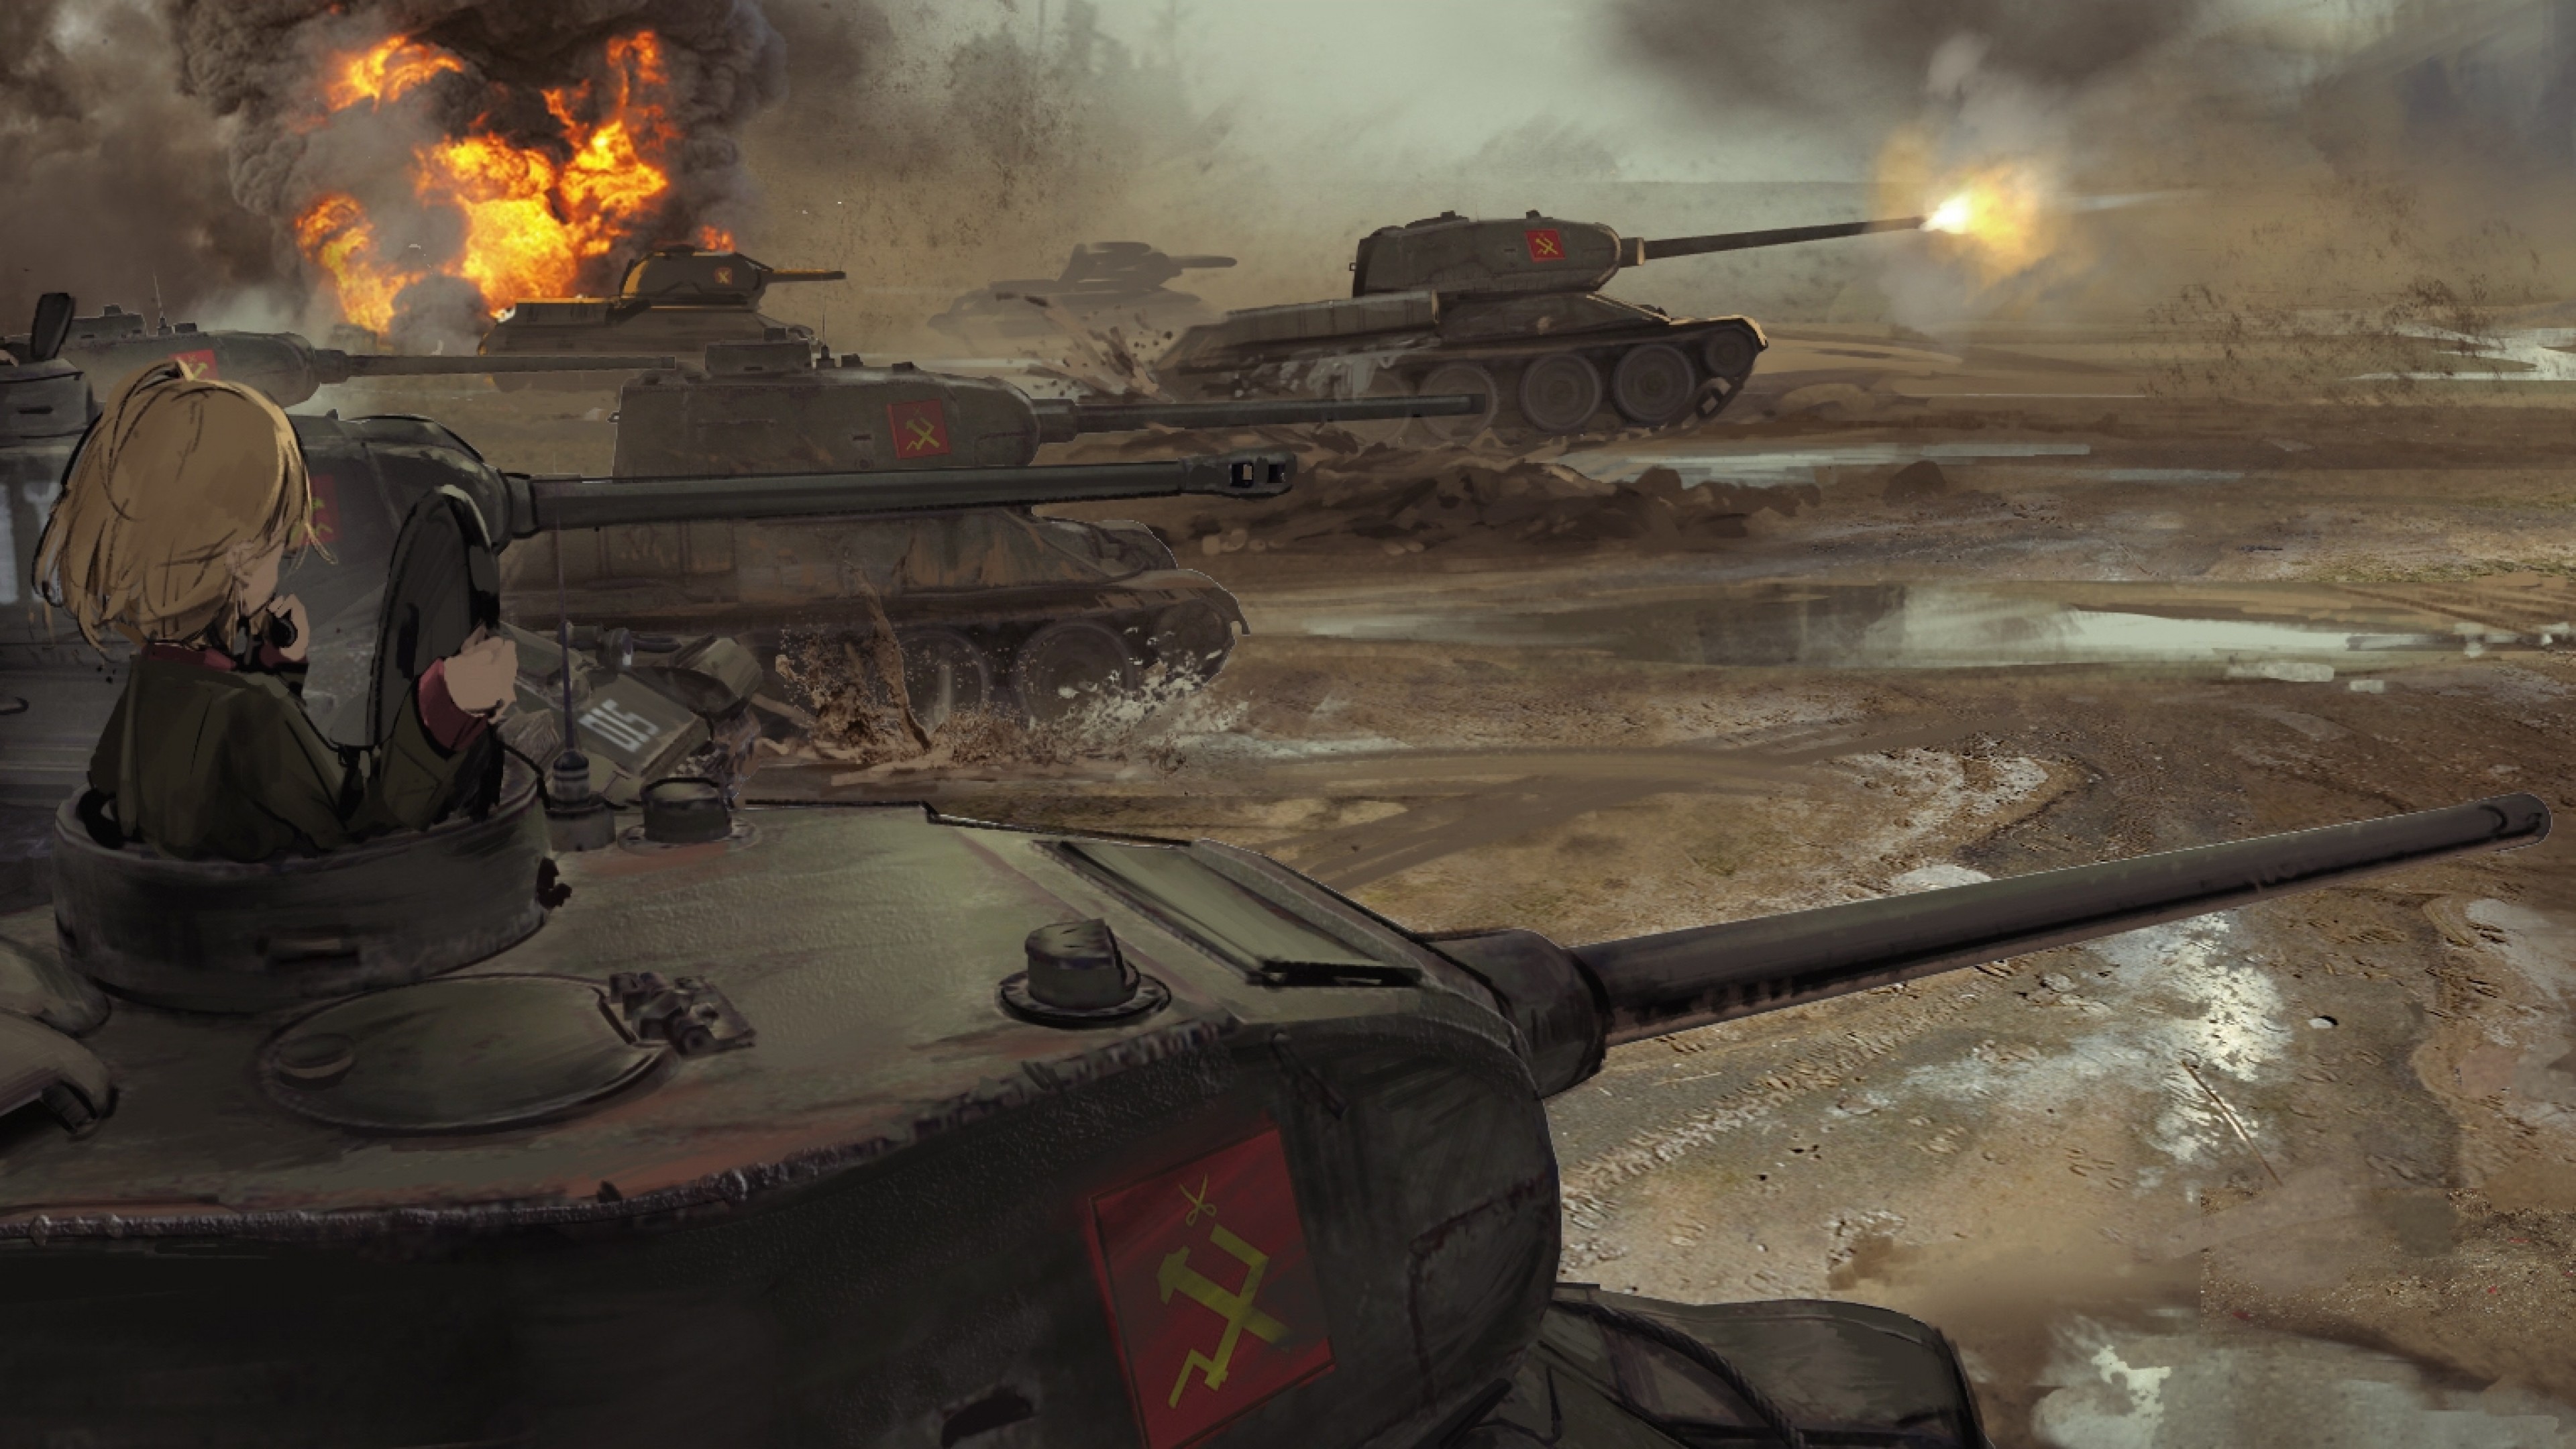 Download 3840x2160 Girls Und Panzer, Battlefield, Tanks, Explosion